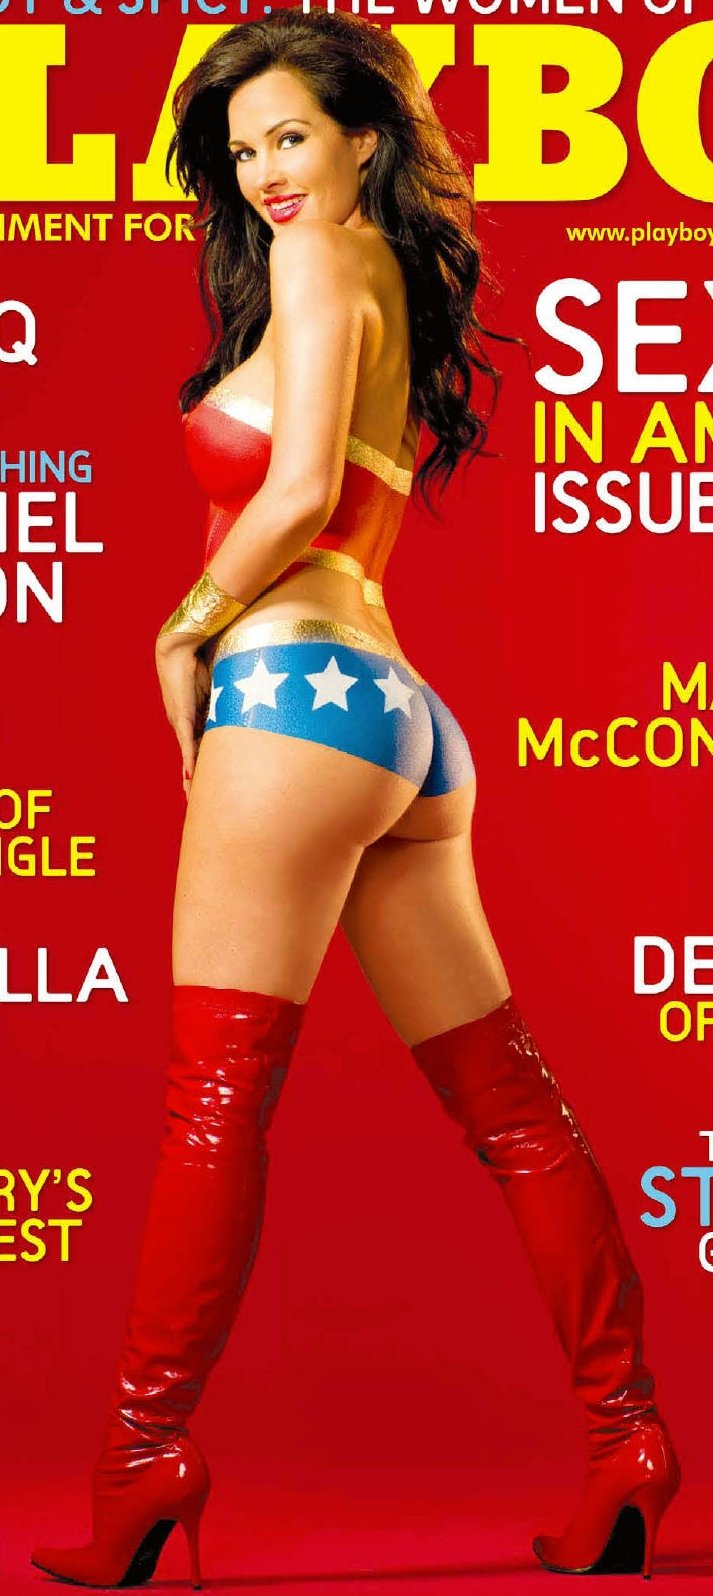 Tiffany Fallon as Wonder Woman